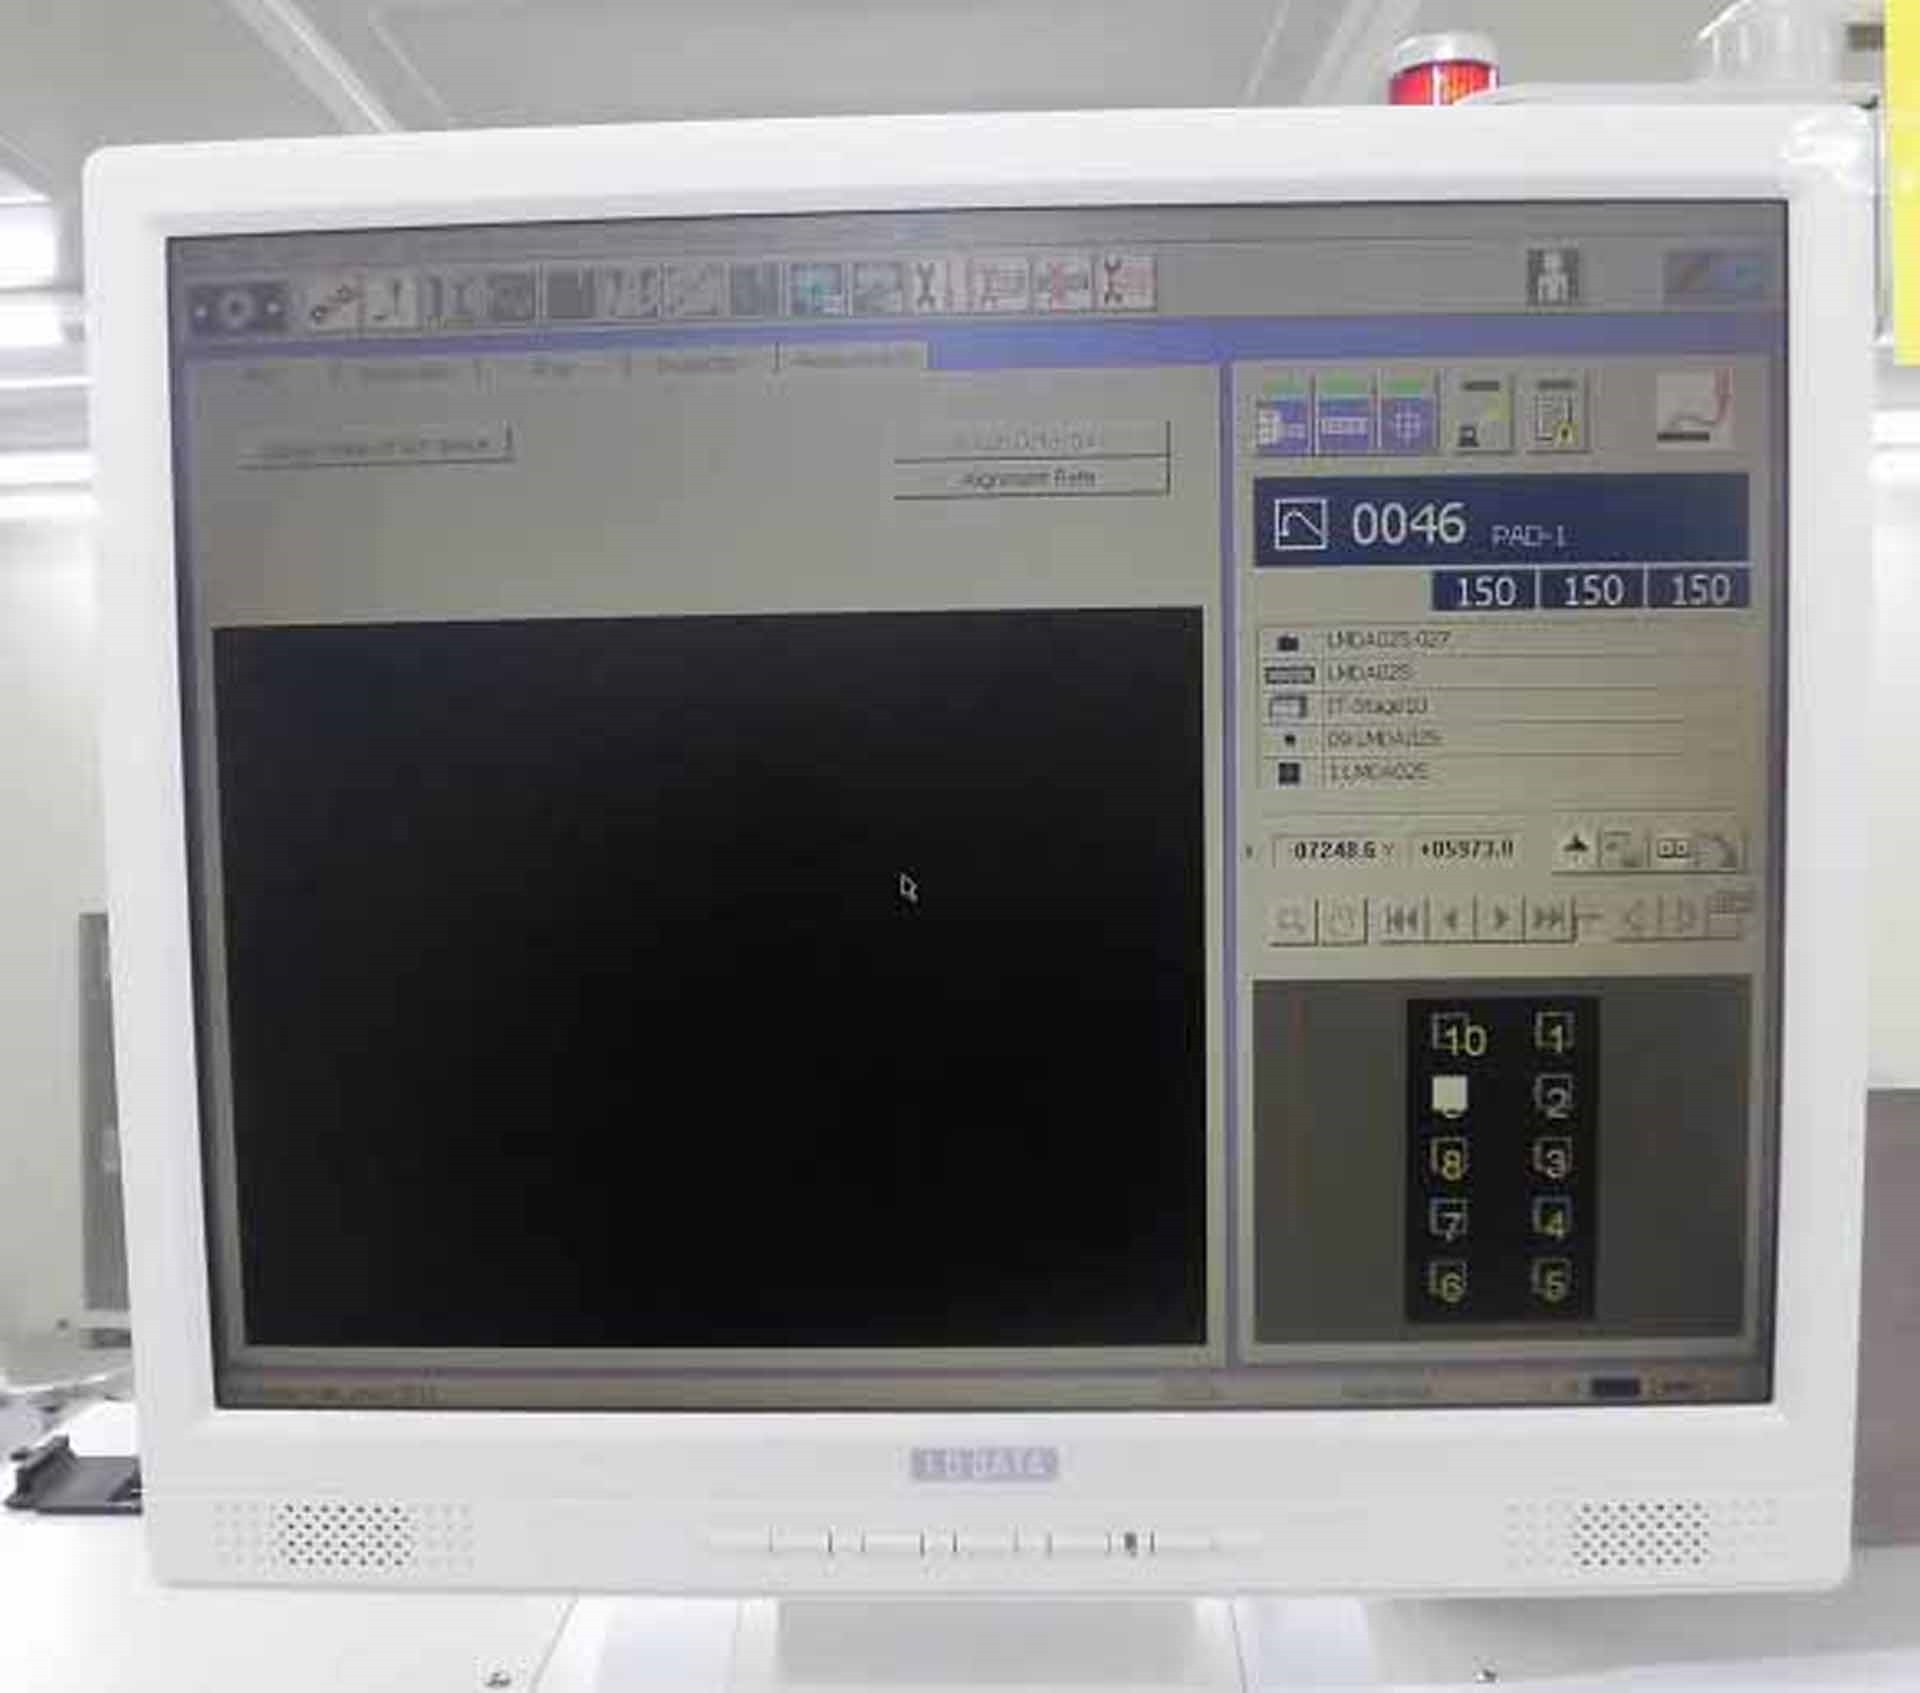 フォト（写真） 使用される SHINKAWA UTC-3000 WE 販売のために